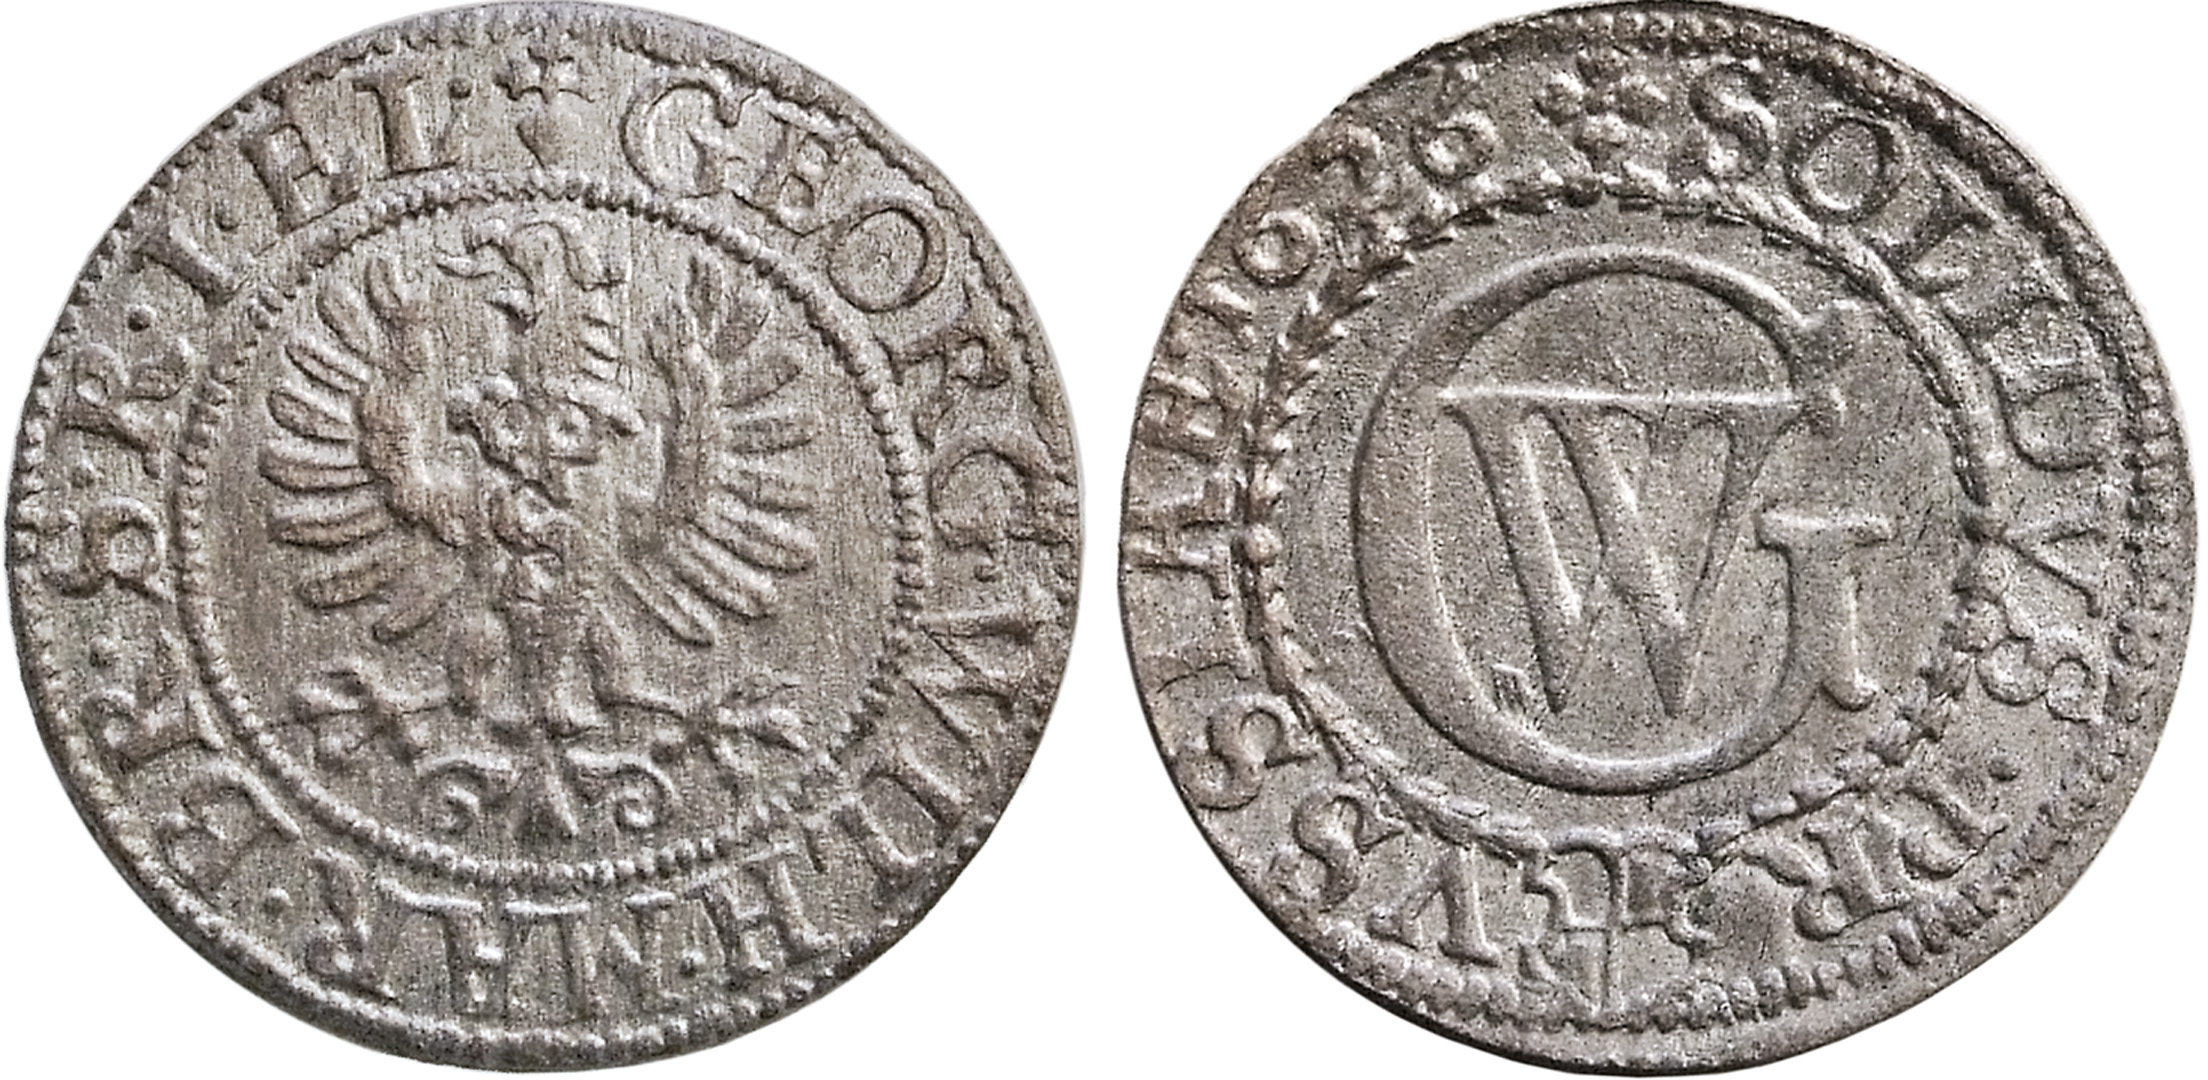 Jungtinės Nyderlandų Provincijos. Vakarų Fryzija. Rijksdalderis. 1620 m. Sidabras. Ø 40 mm, L. Stuokos-Gucevičiaus g. lobio (Vilnius, 1630/2003) moneta